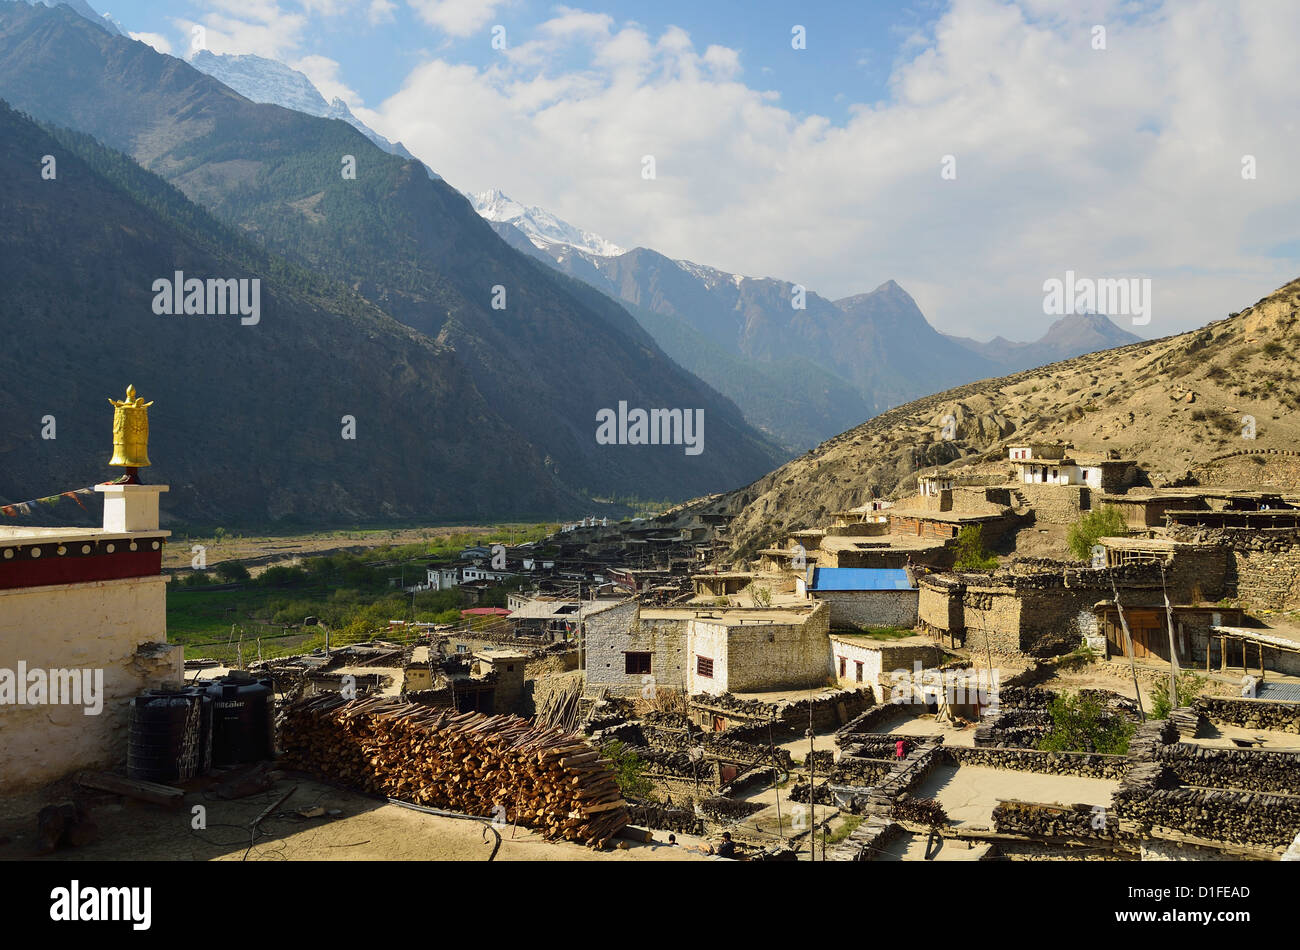 Village de Marpha, de l'Annapurna Conservation Area, Mustang, District de Dhawalagiri (Dhaulagiri), Région de l'Ouest (Pashchimanchal), Népal Banque D'Images